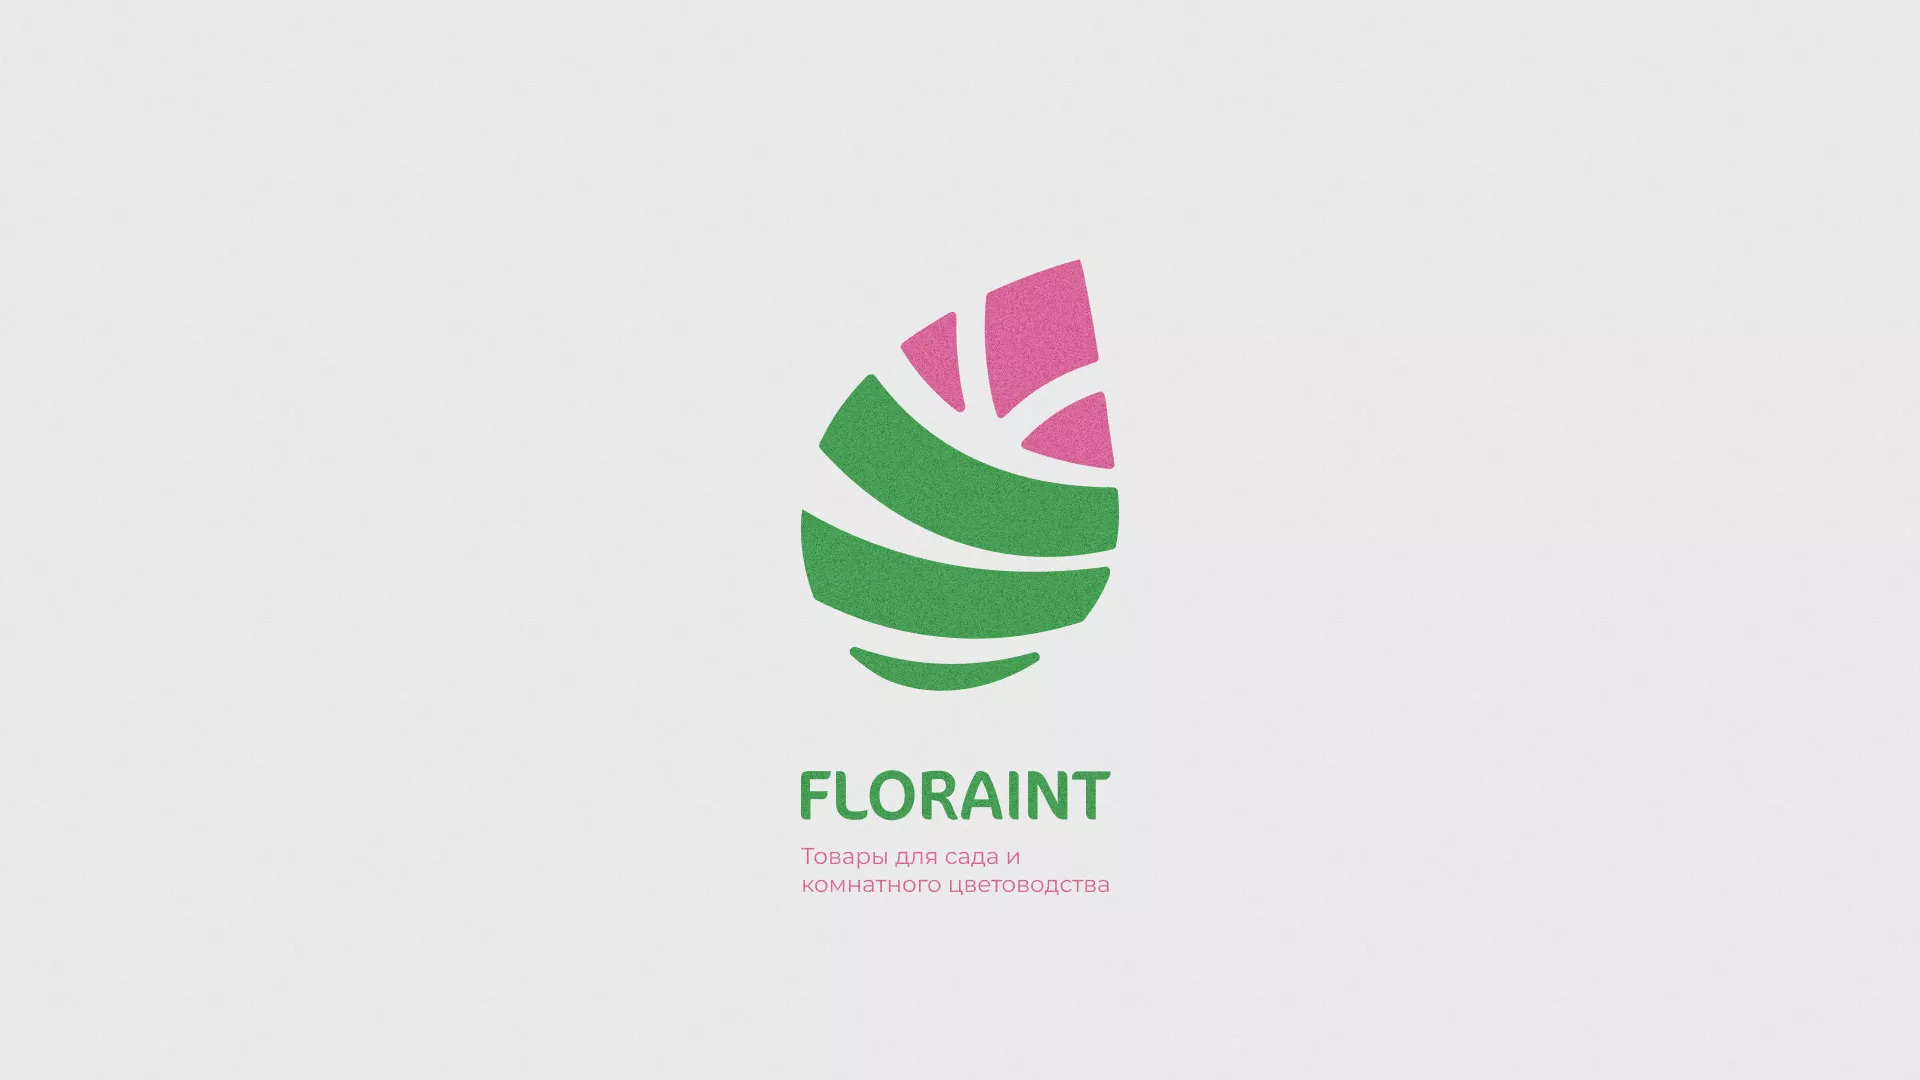 Разработка оформления профиля Instagram для магазина «Floraint» в Пересвете